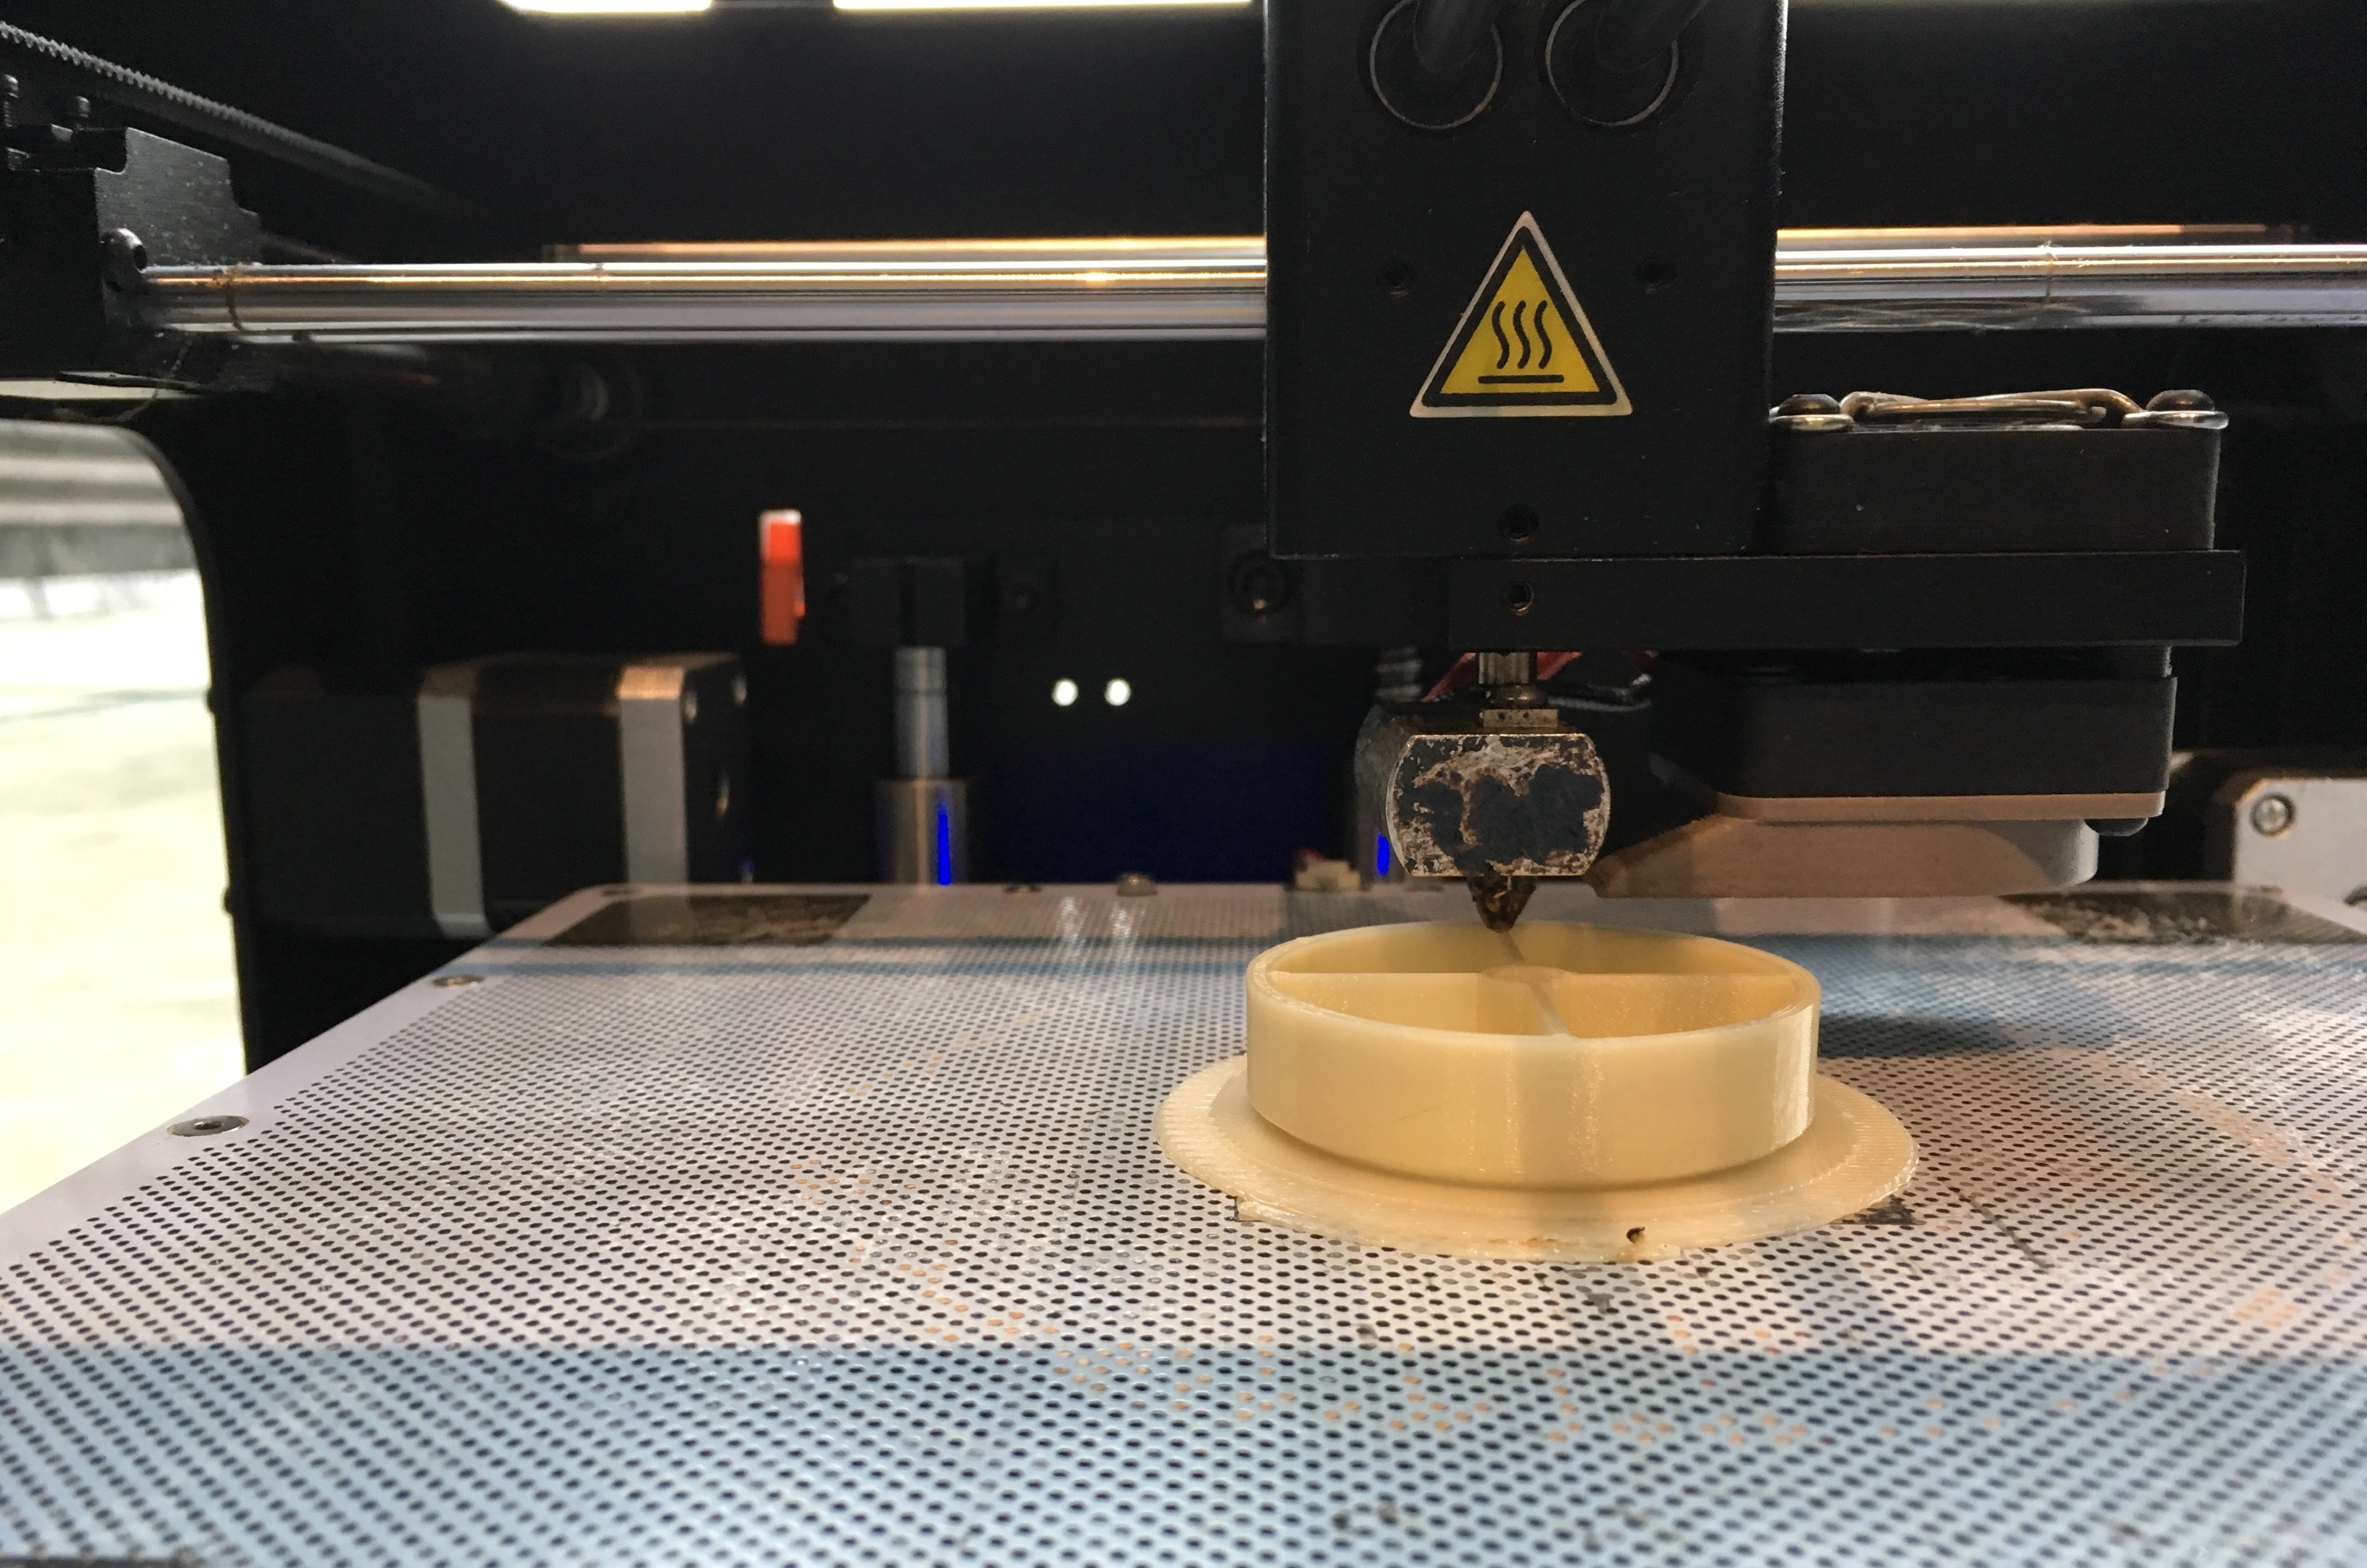 auf einer gelochten Metallplatte ist ein Plastikgegenstand zu sehen, über den der Druckkopf eines 3D-Druckers fährt